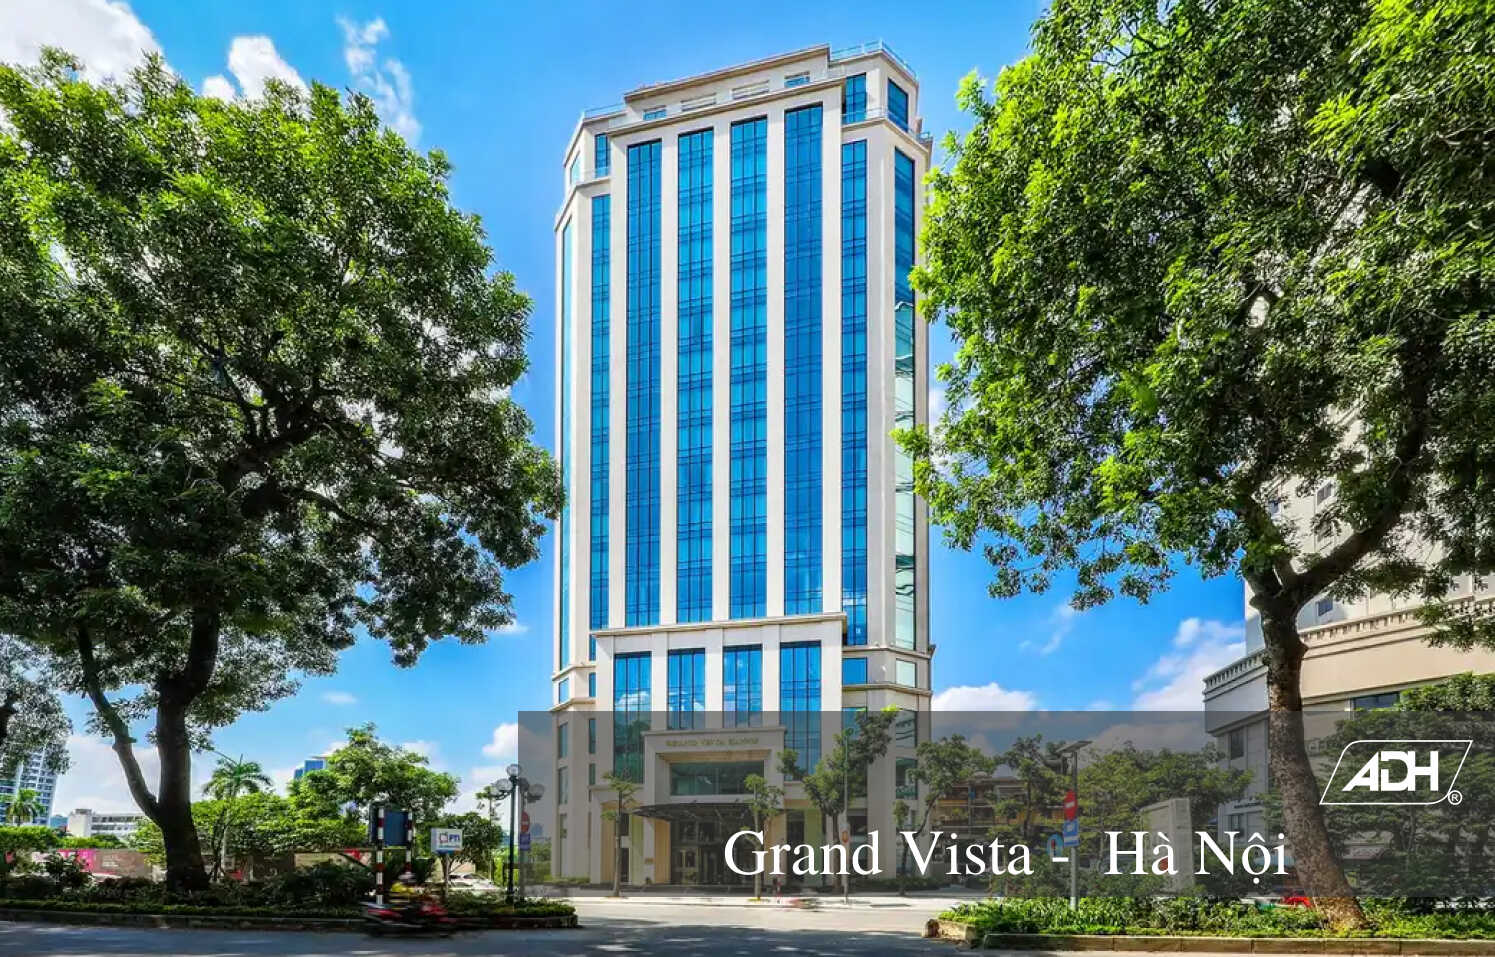 Grand Vista - Hà Nội